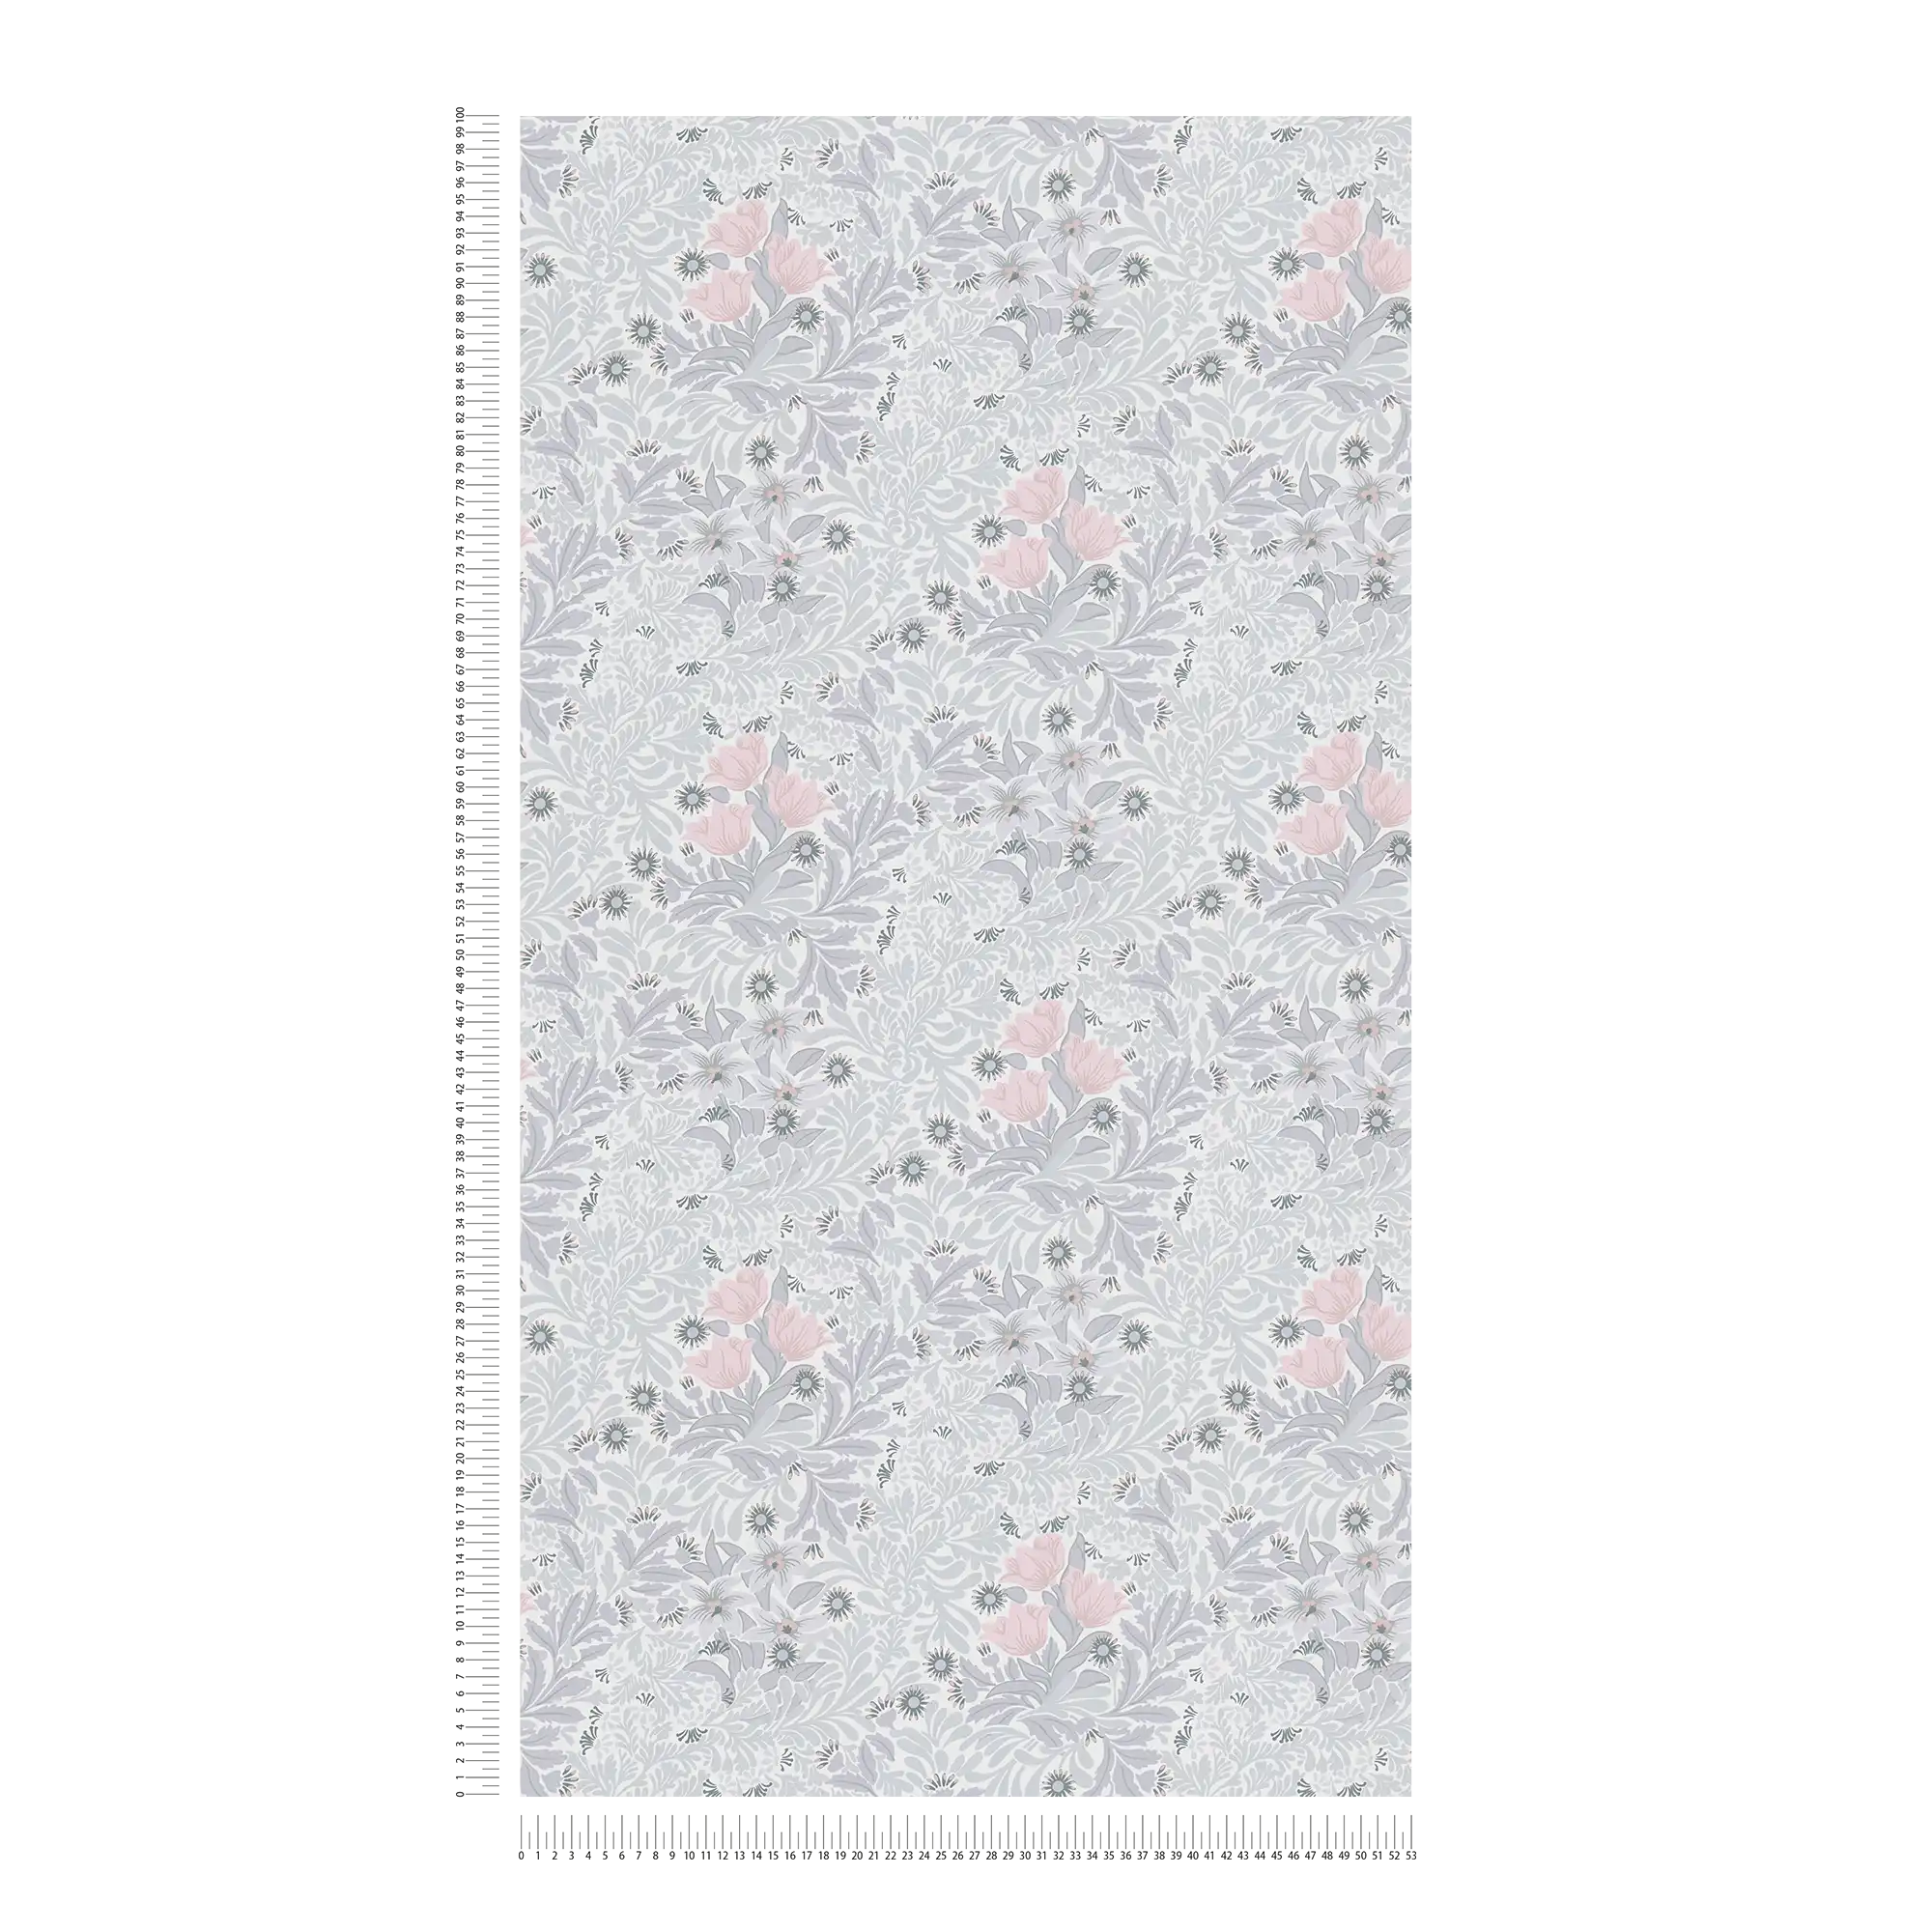             Vliestapete mit floralem Muster in sanften Farbtönen – Grau, Rosa, Weiß
        